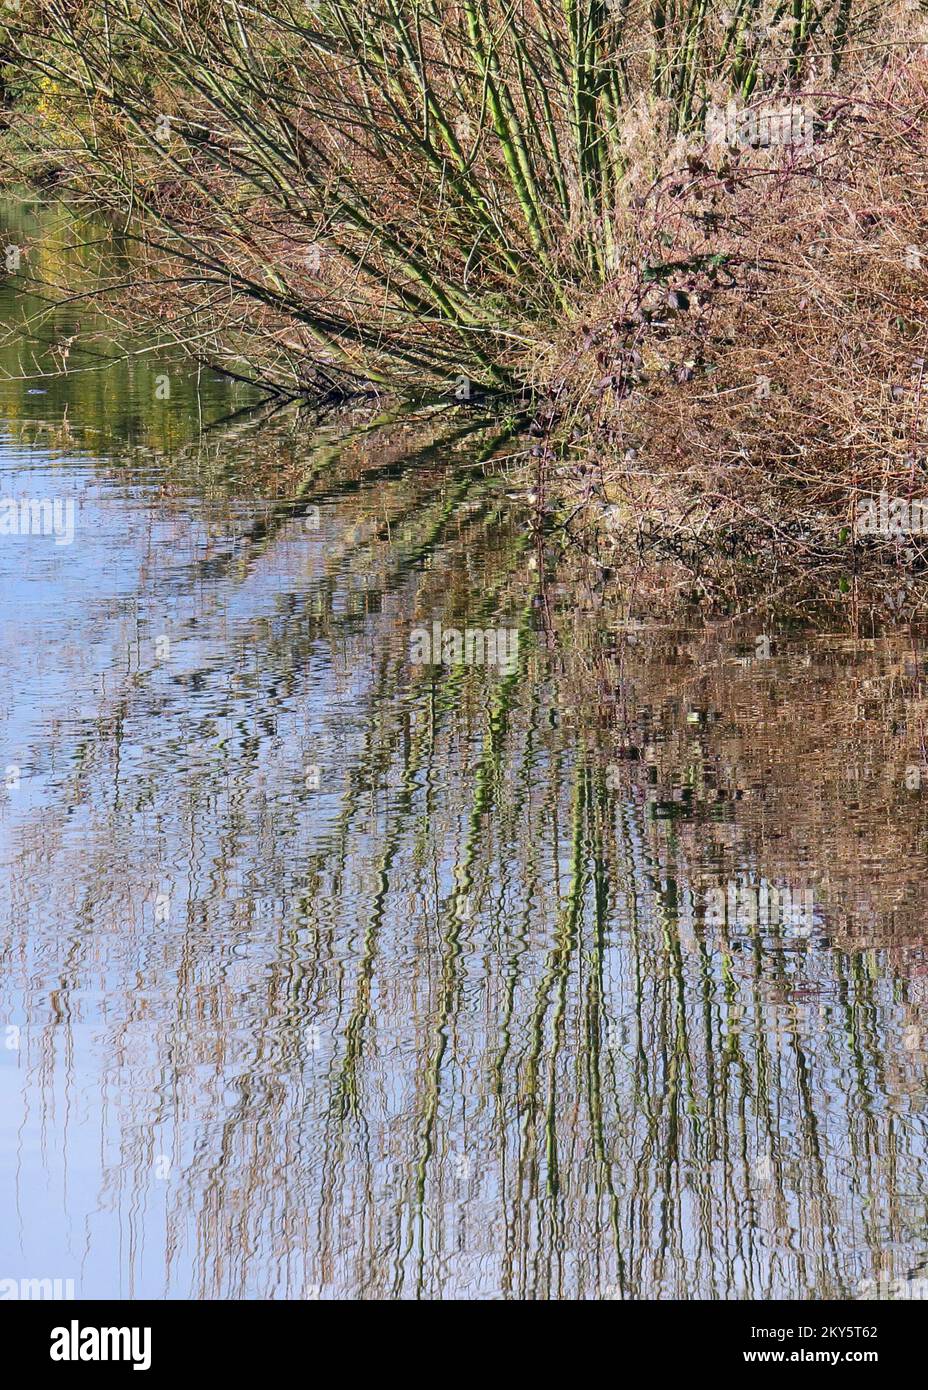 Landschaftsfotografie: Von Bäumen gesäumte Ränder der Wasserstraße, die sich im Wasser auf dem Shropshire und Worcester Kanal, einem British Waterways Kanal nahe Tixal, widerspiegeln Stockfoto